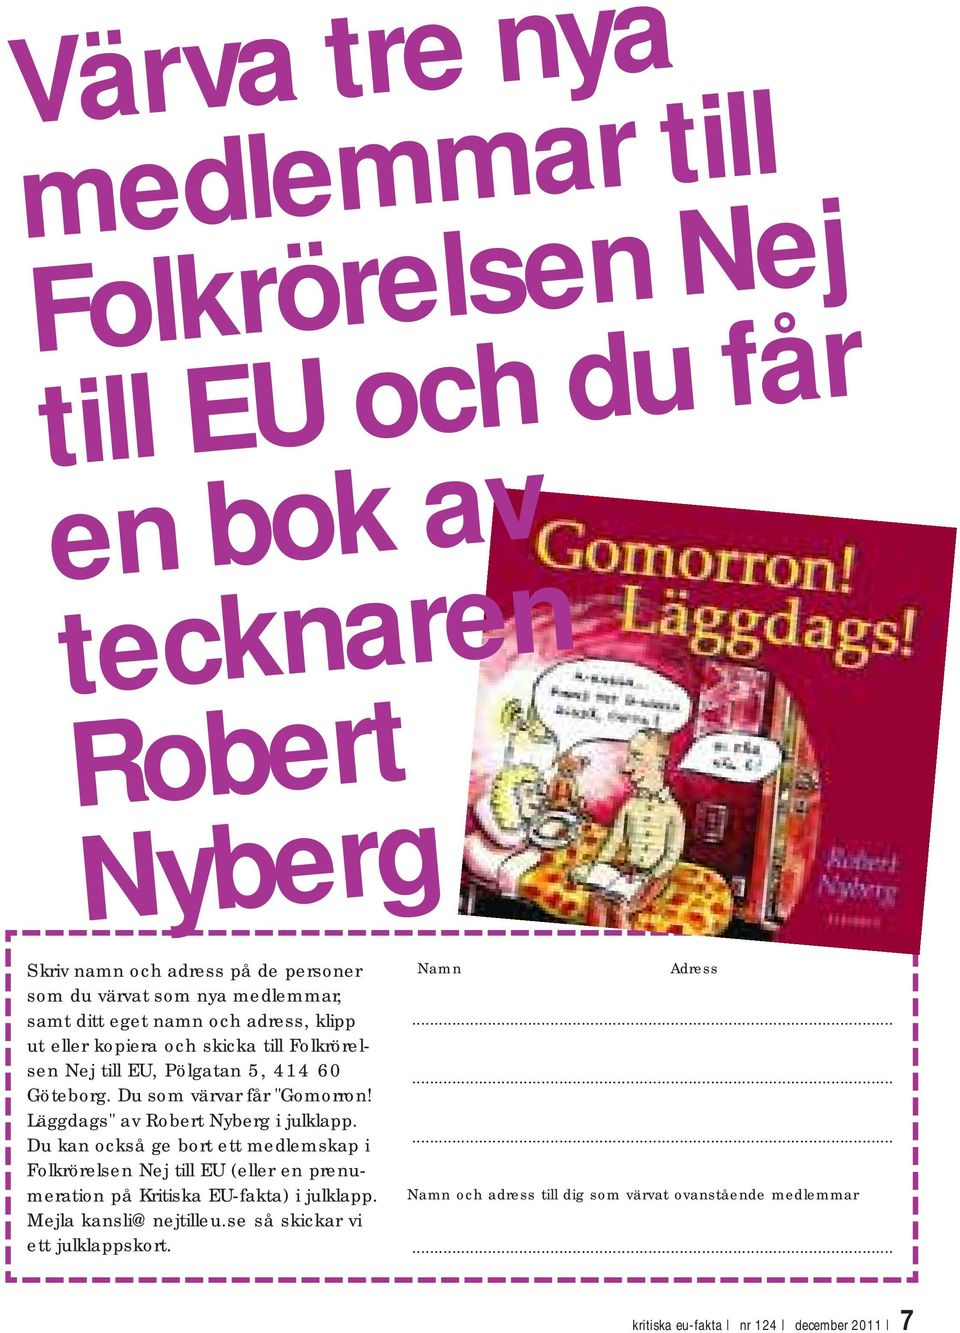 Läggdags" av Robert Nyberg i julklapp. Du kan också ge bort ett medlemskap i Folkrörelsen Nej till EU (eller en prenumeration på Kritiska EU-fakta) i julklapp.